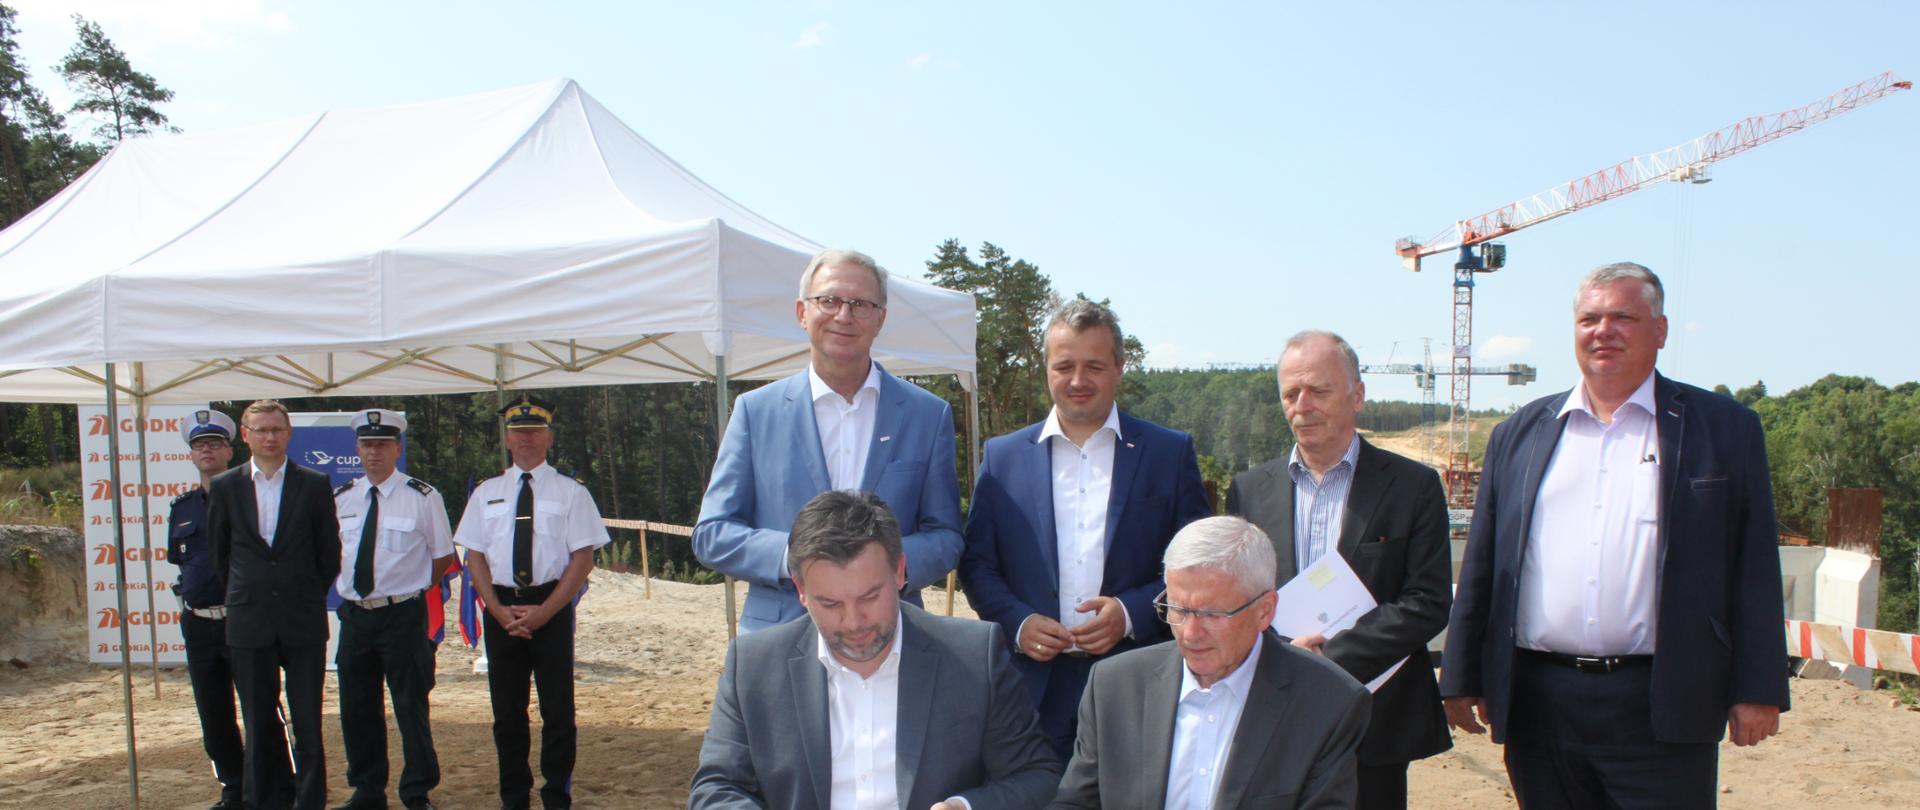 Podpisanie umowy o dofinansowanie S5 pomiędzy Bydgoszczą i Nowymi Marzami 